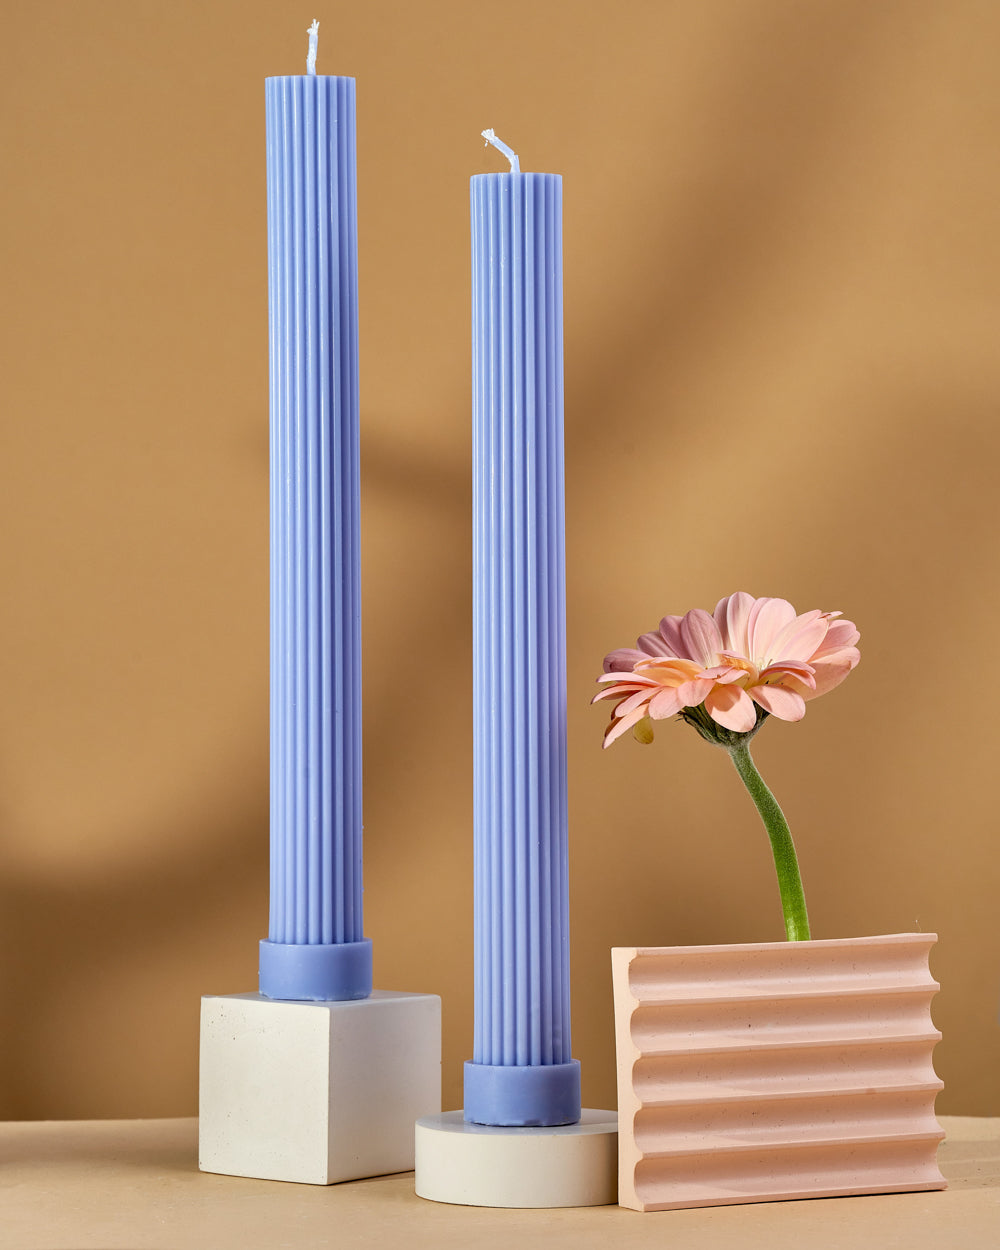 Säulen Kerzen